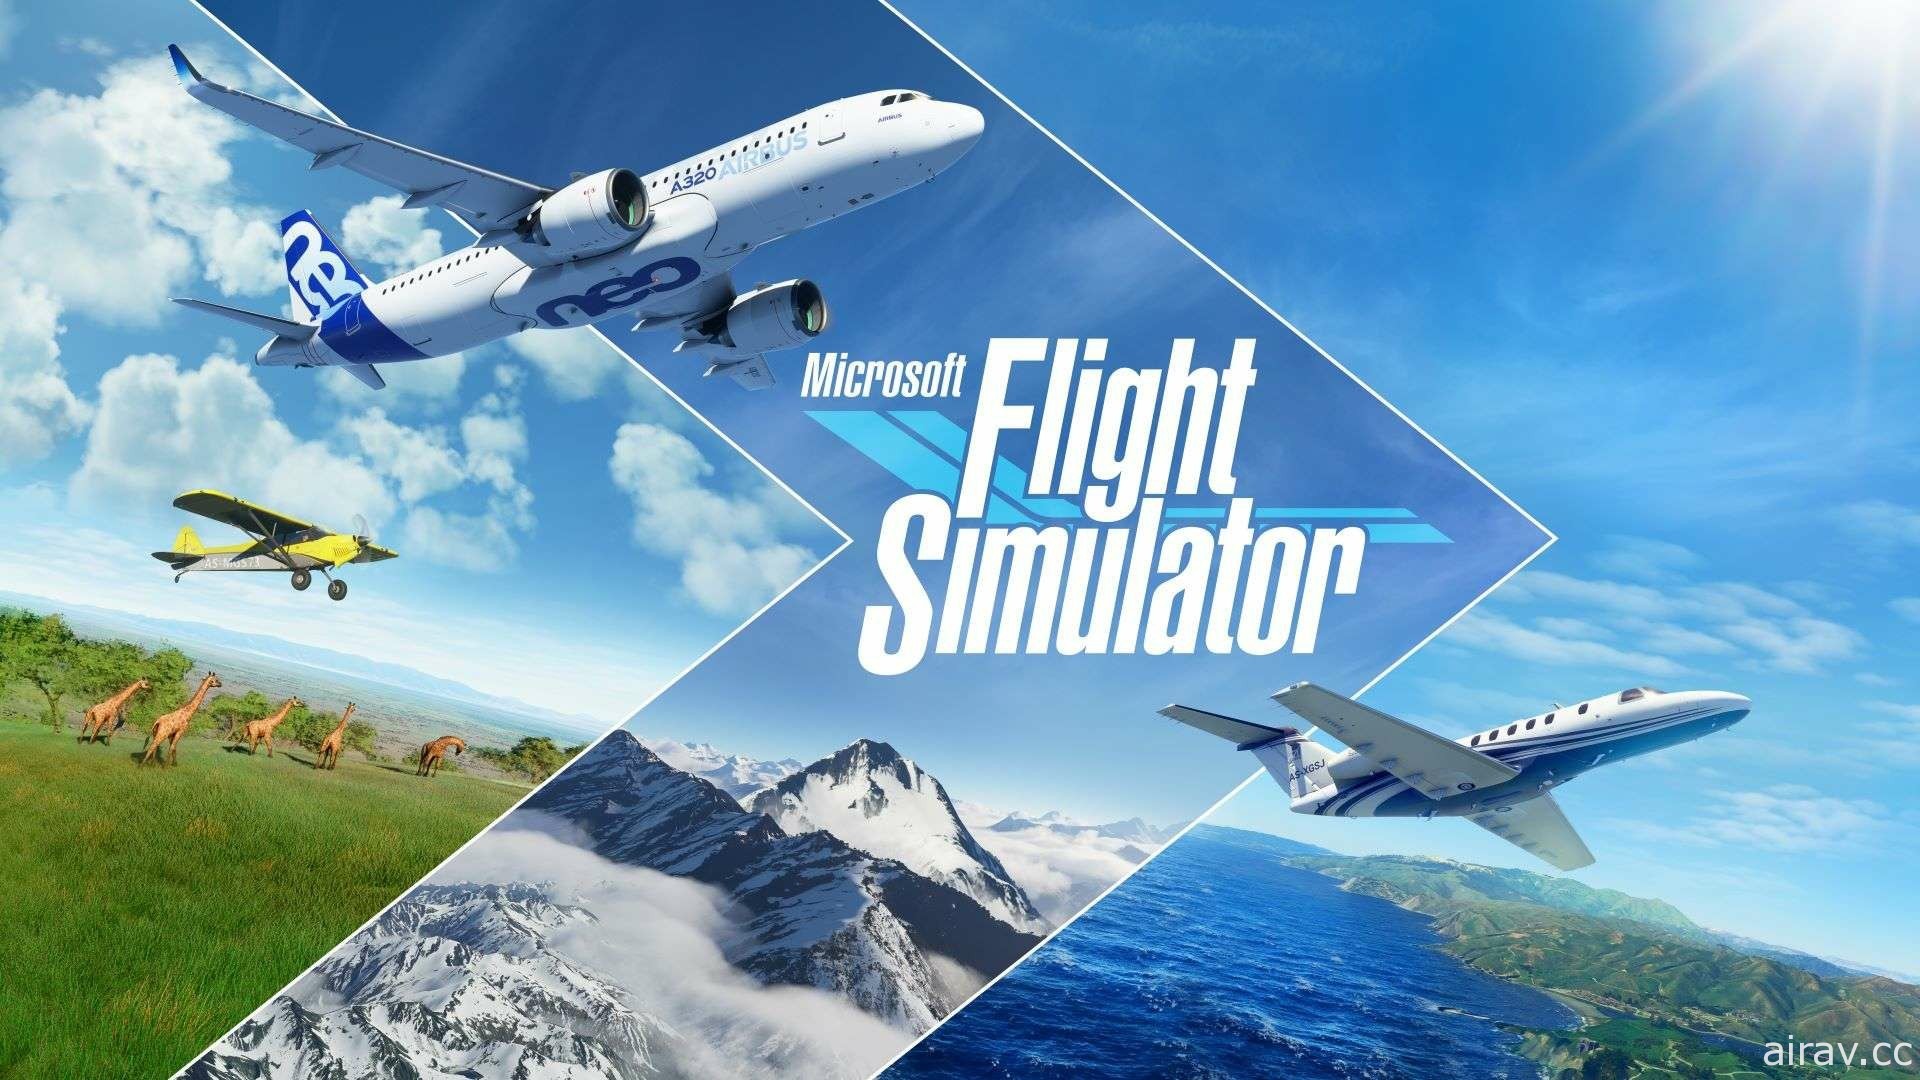 《微軟模擬飛行》正式登陸 Xbox 次世代主機 台灣微軟分享 Game Pass 後續計畫